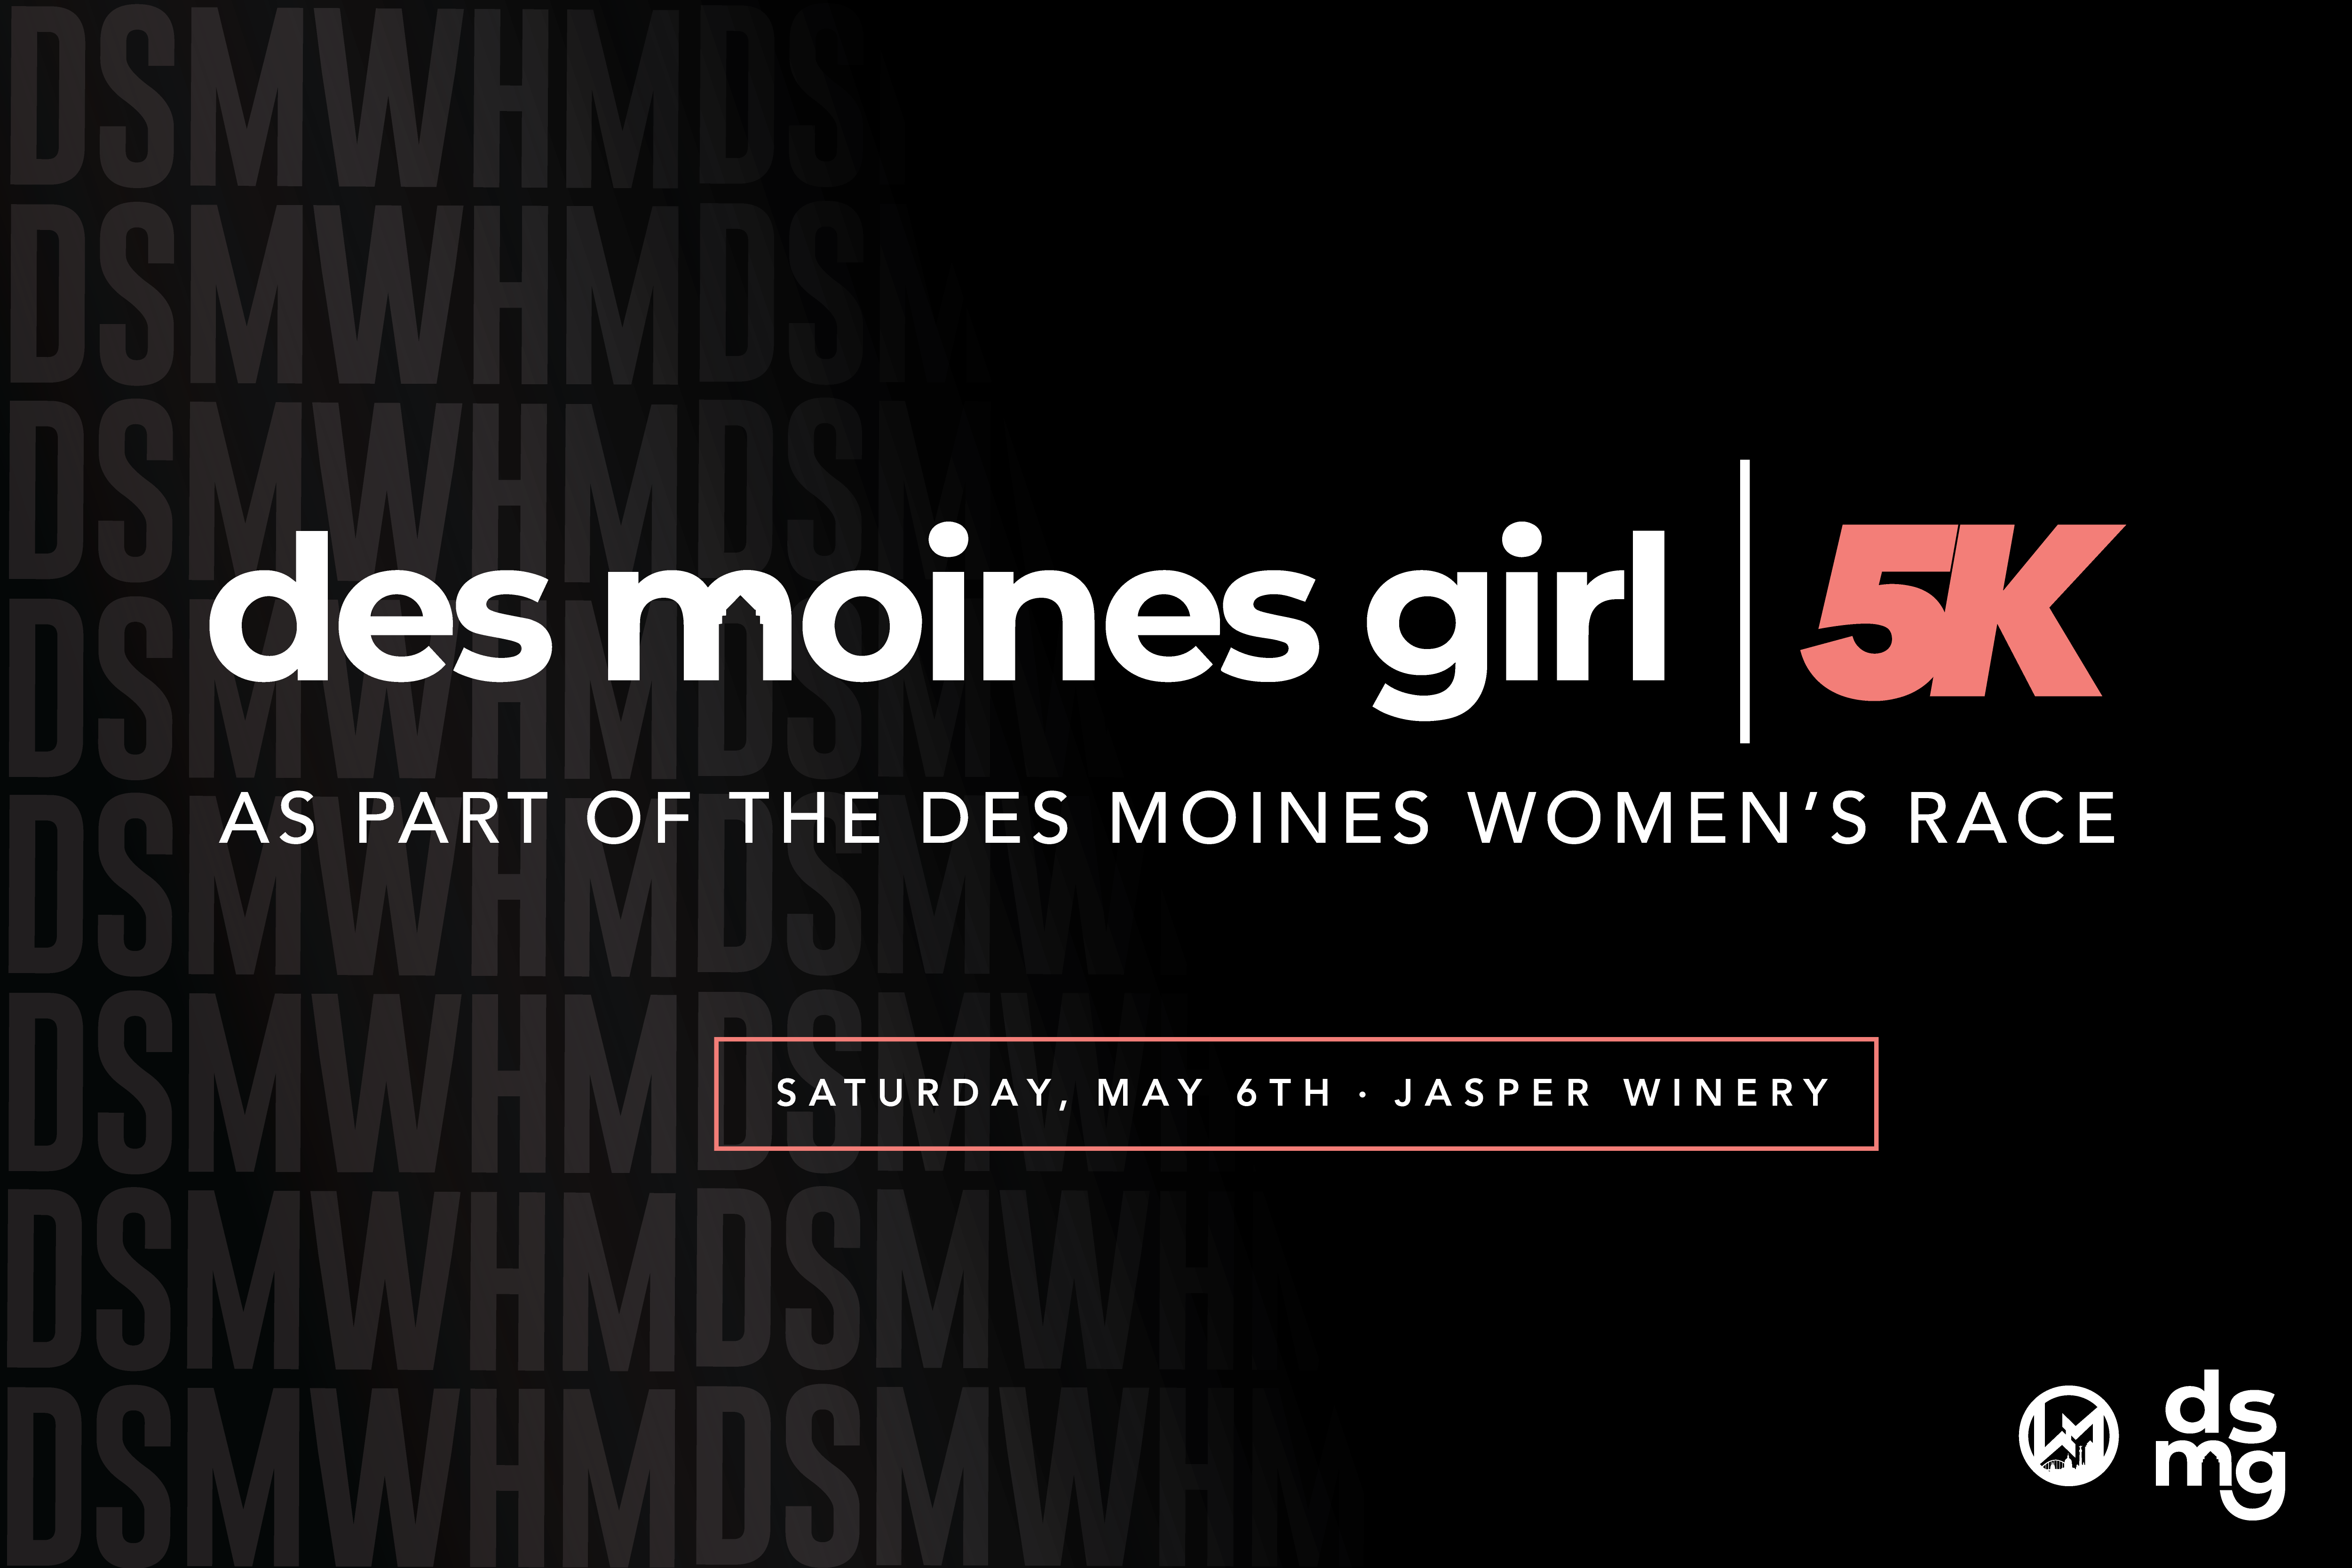 The Des Moines Girl 5K